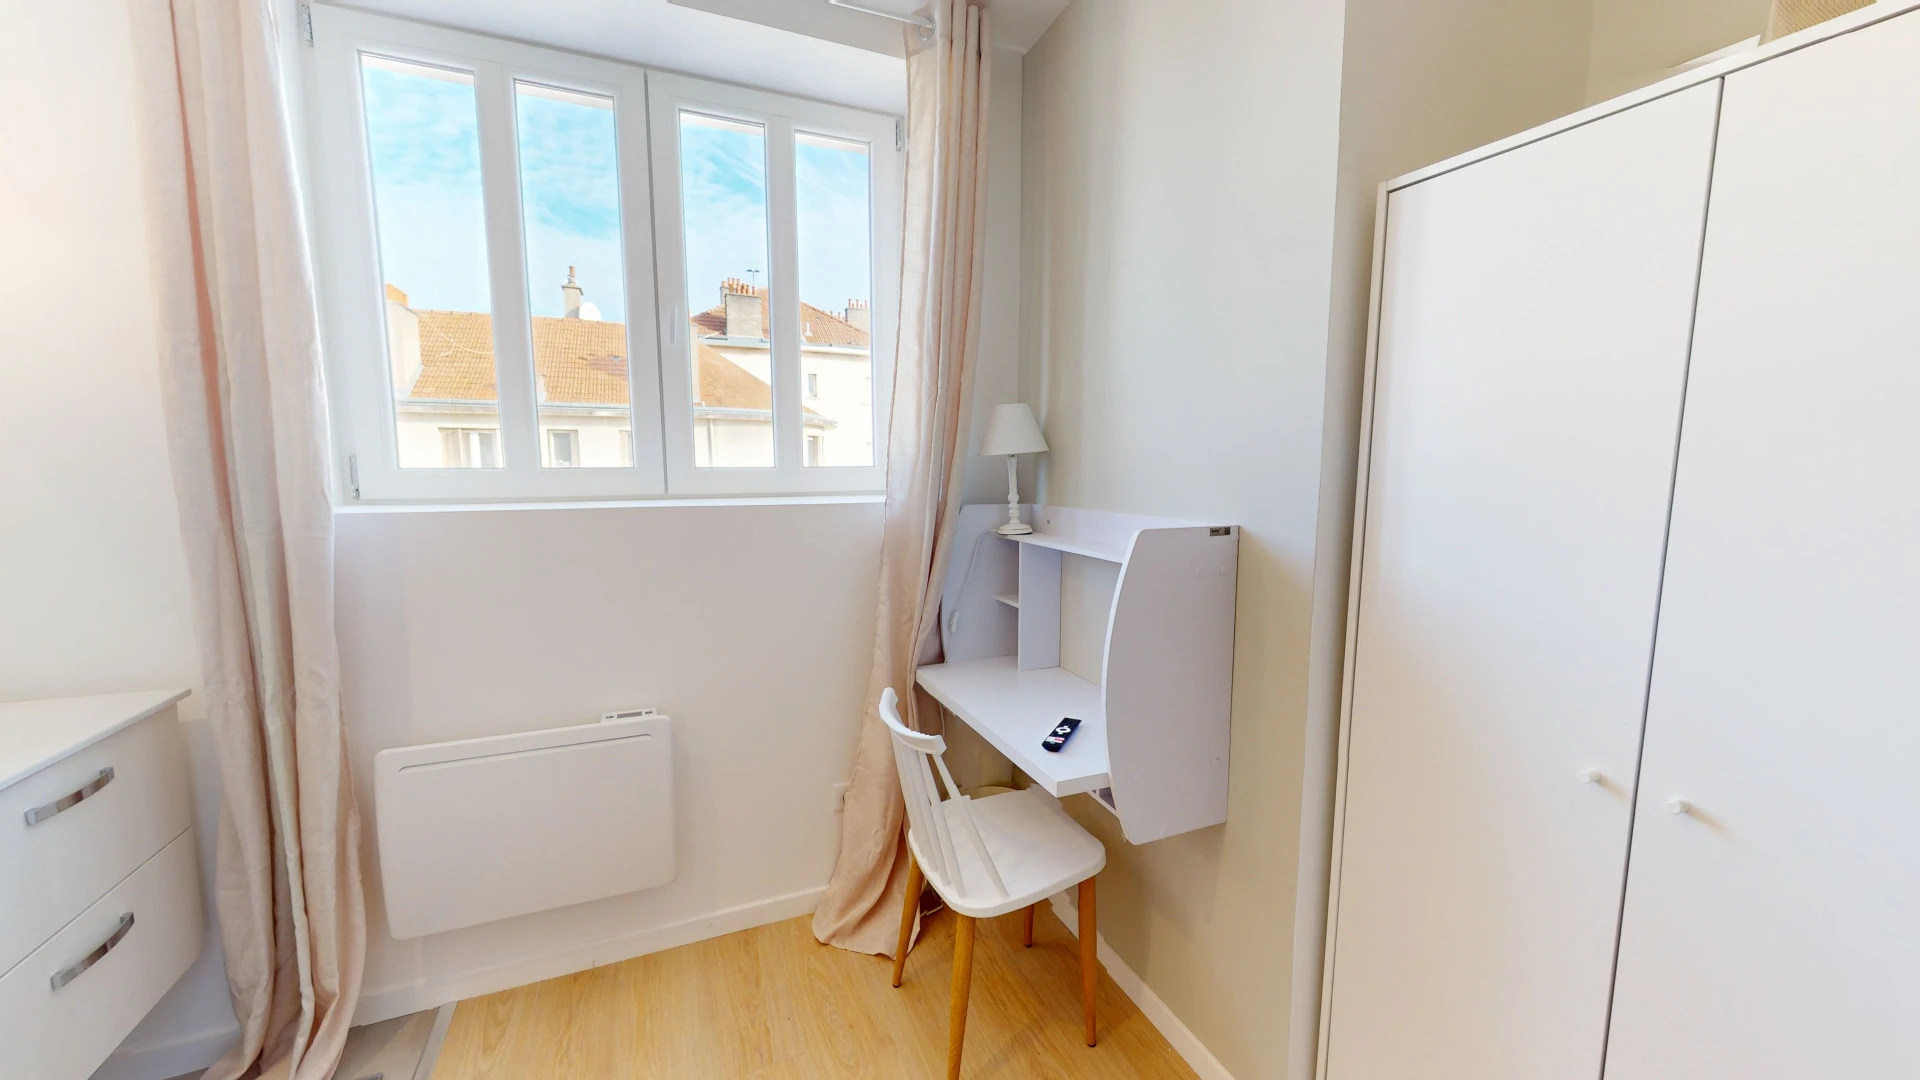 Cheap private room in Dijon